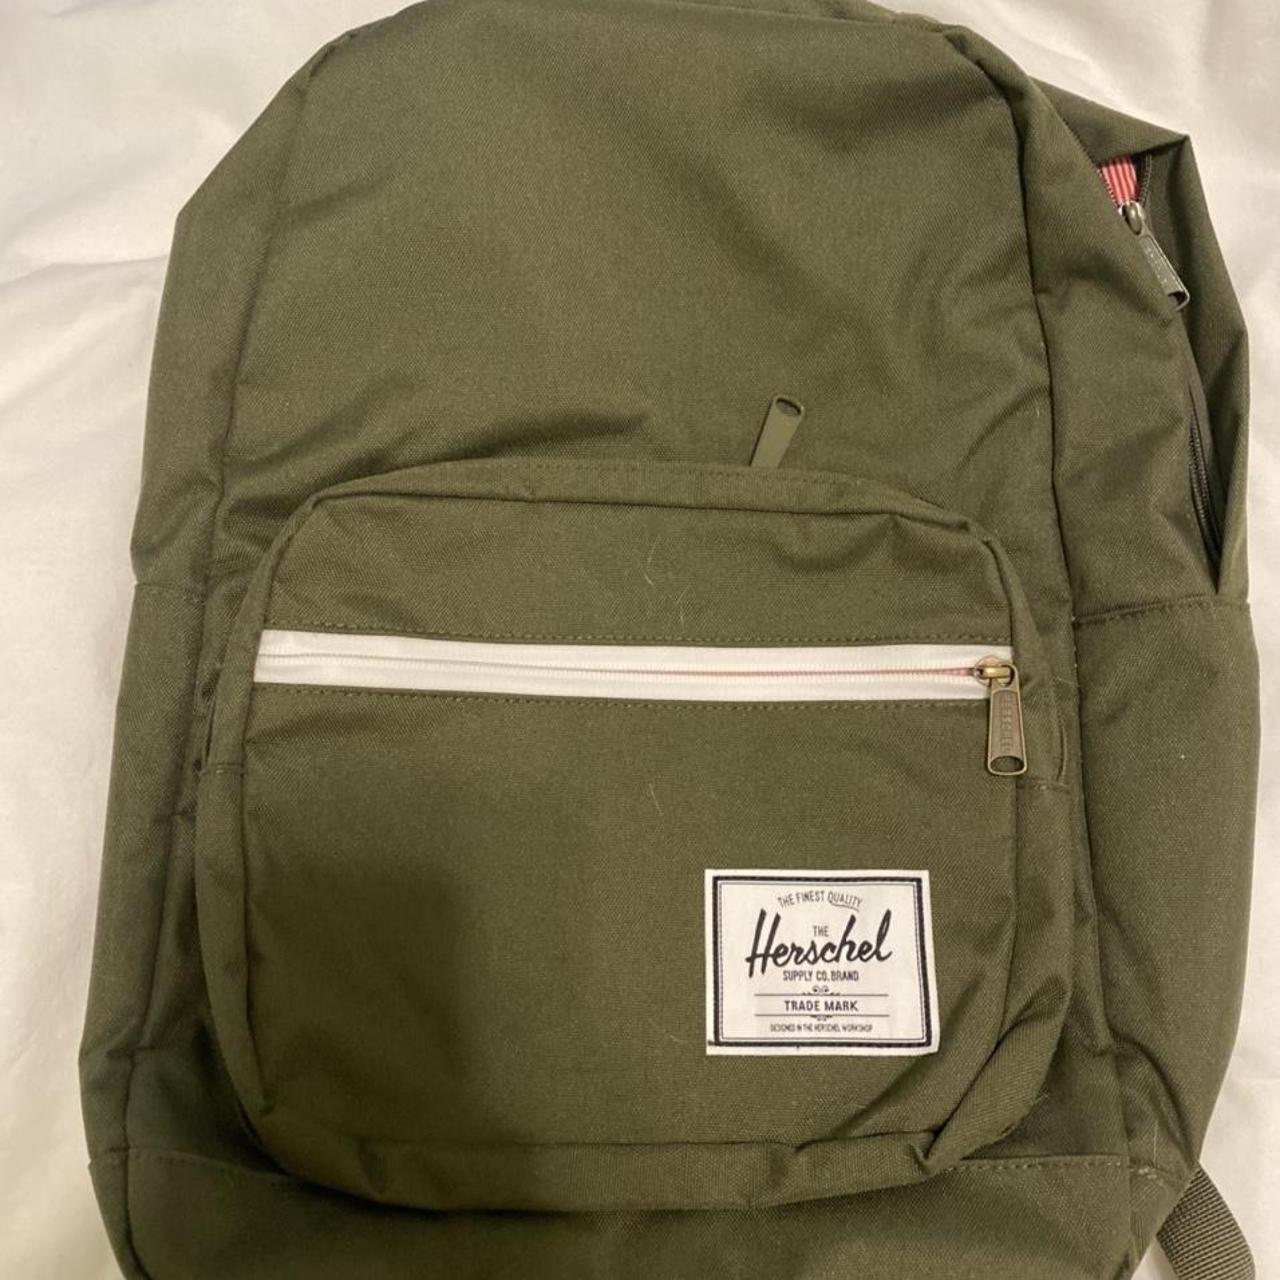 Herschel backpack Dark olive Never been used Perfect... - Depop